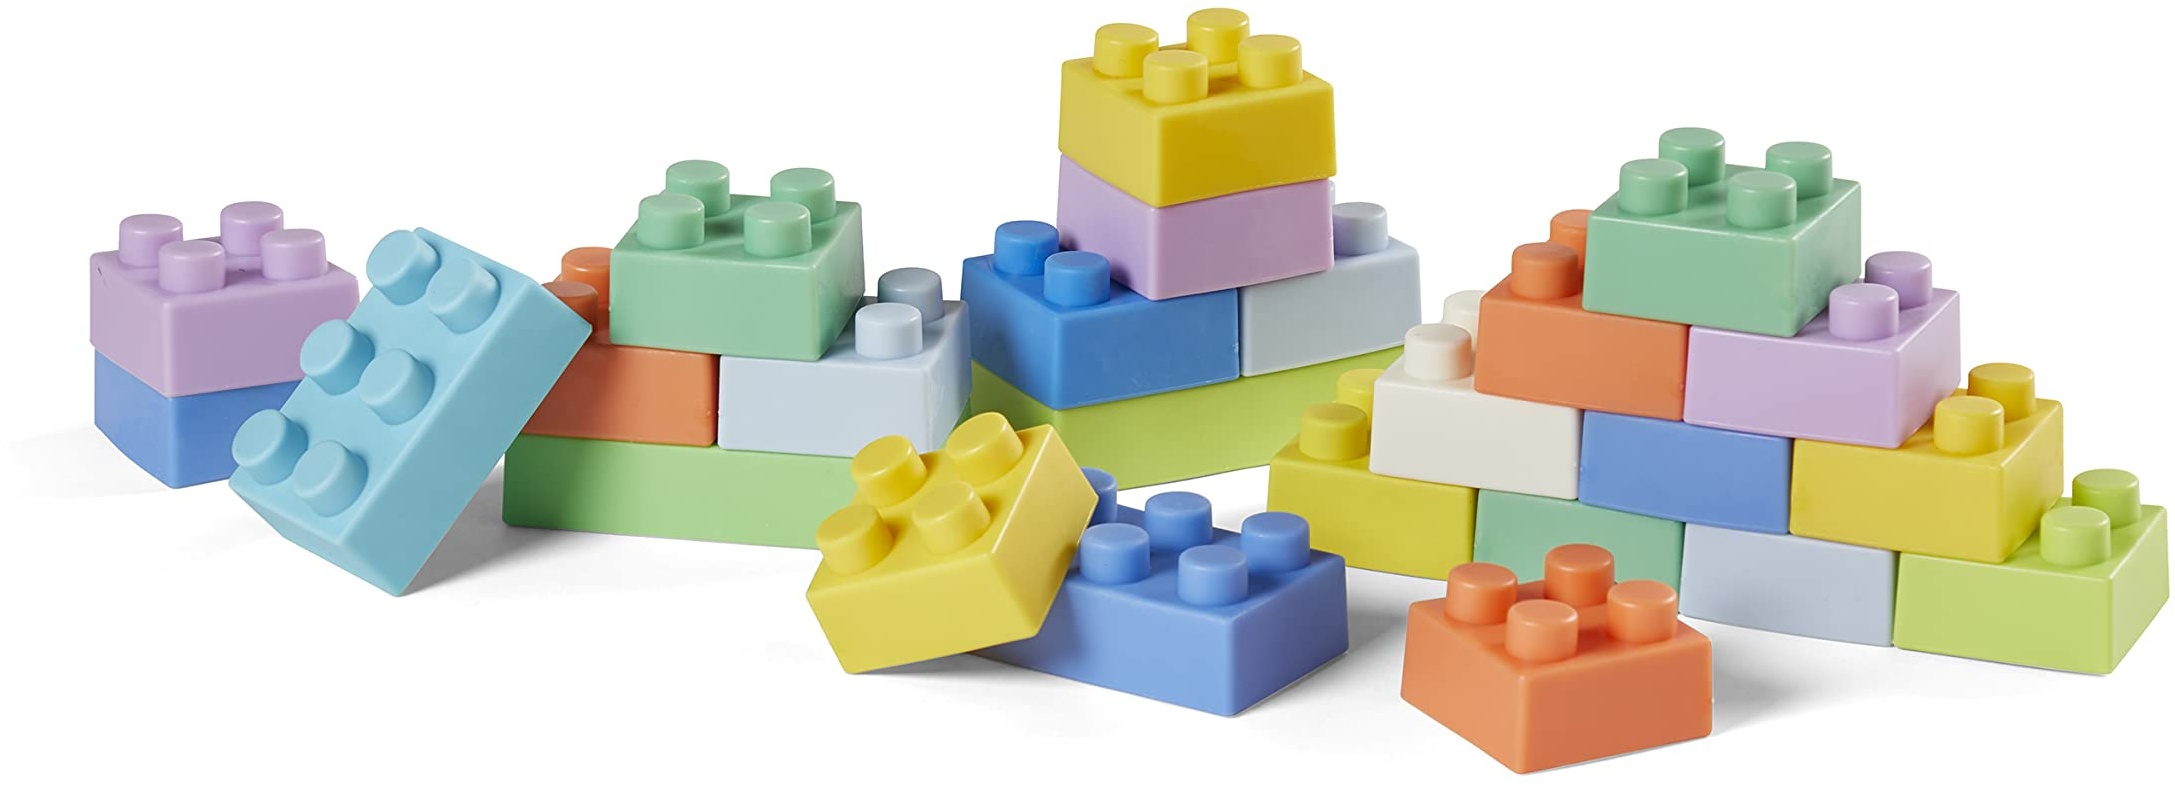 Infantino Superweiche Bausteine, BPA-freies, sensorisches Spielzeug, bunt, Set aus 25, Babylernspielzeug, Multicolored